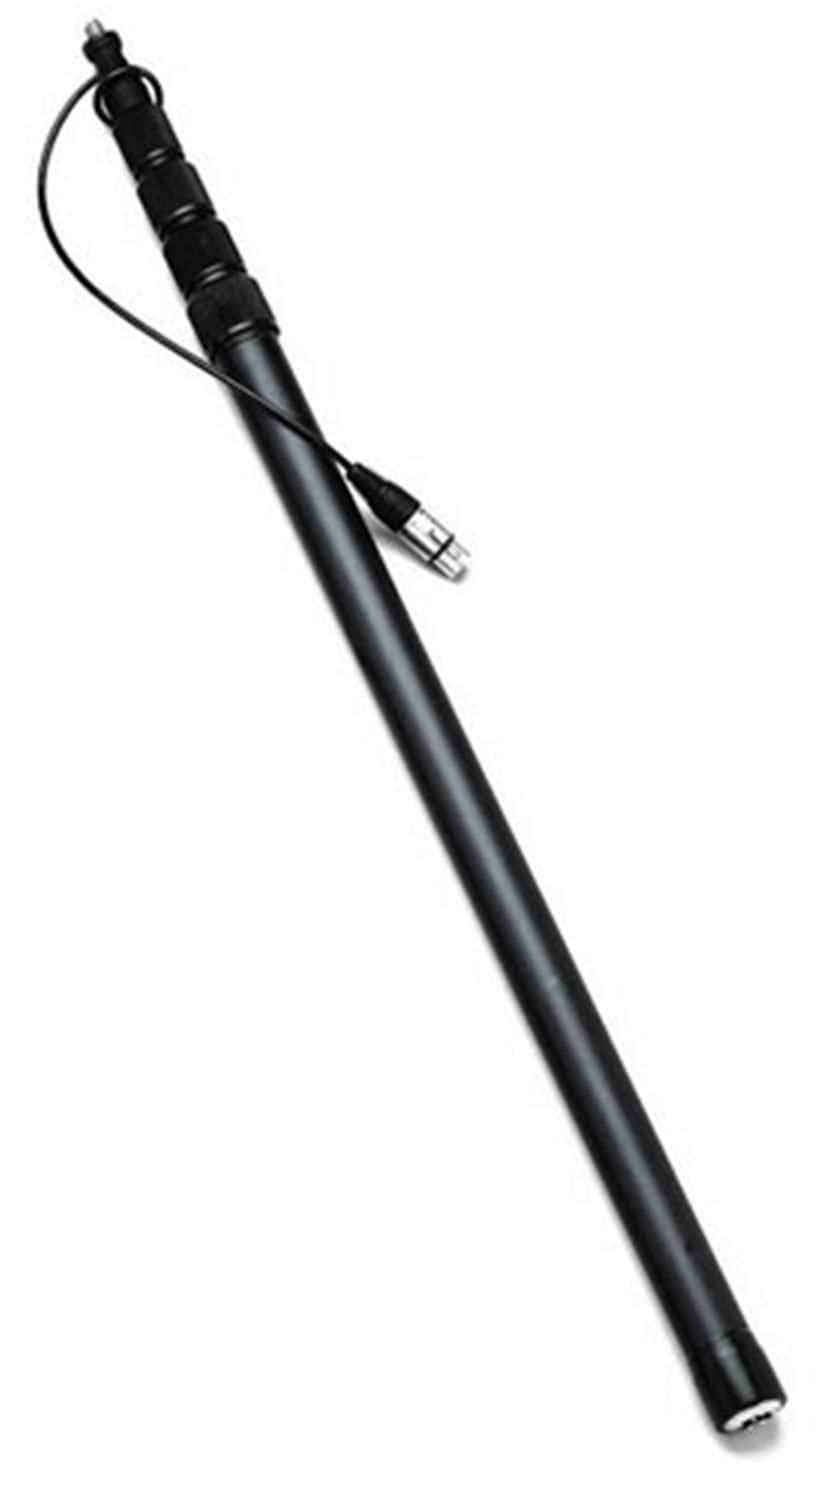 KTEK K102Ccr Klassik Carbon Fiber Boom Pole - PSSL ProSound and Stage Lighting